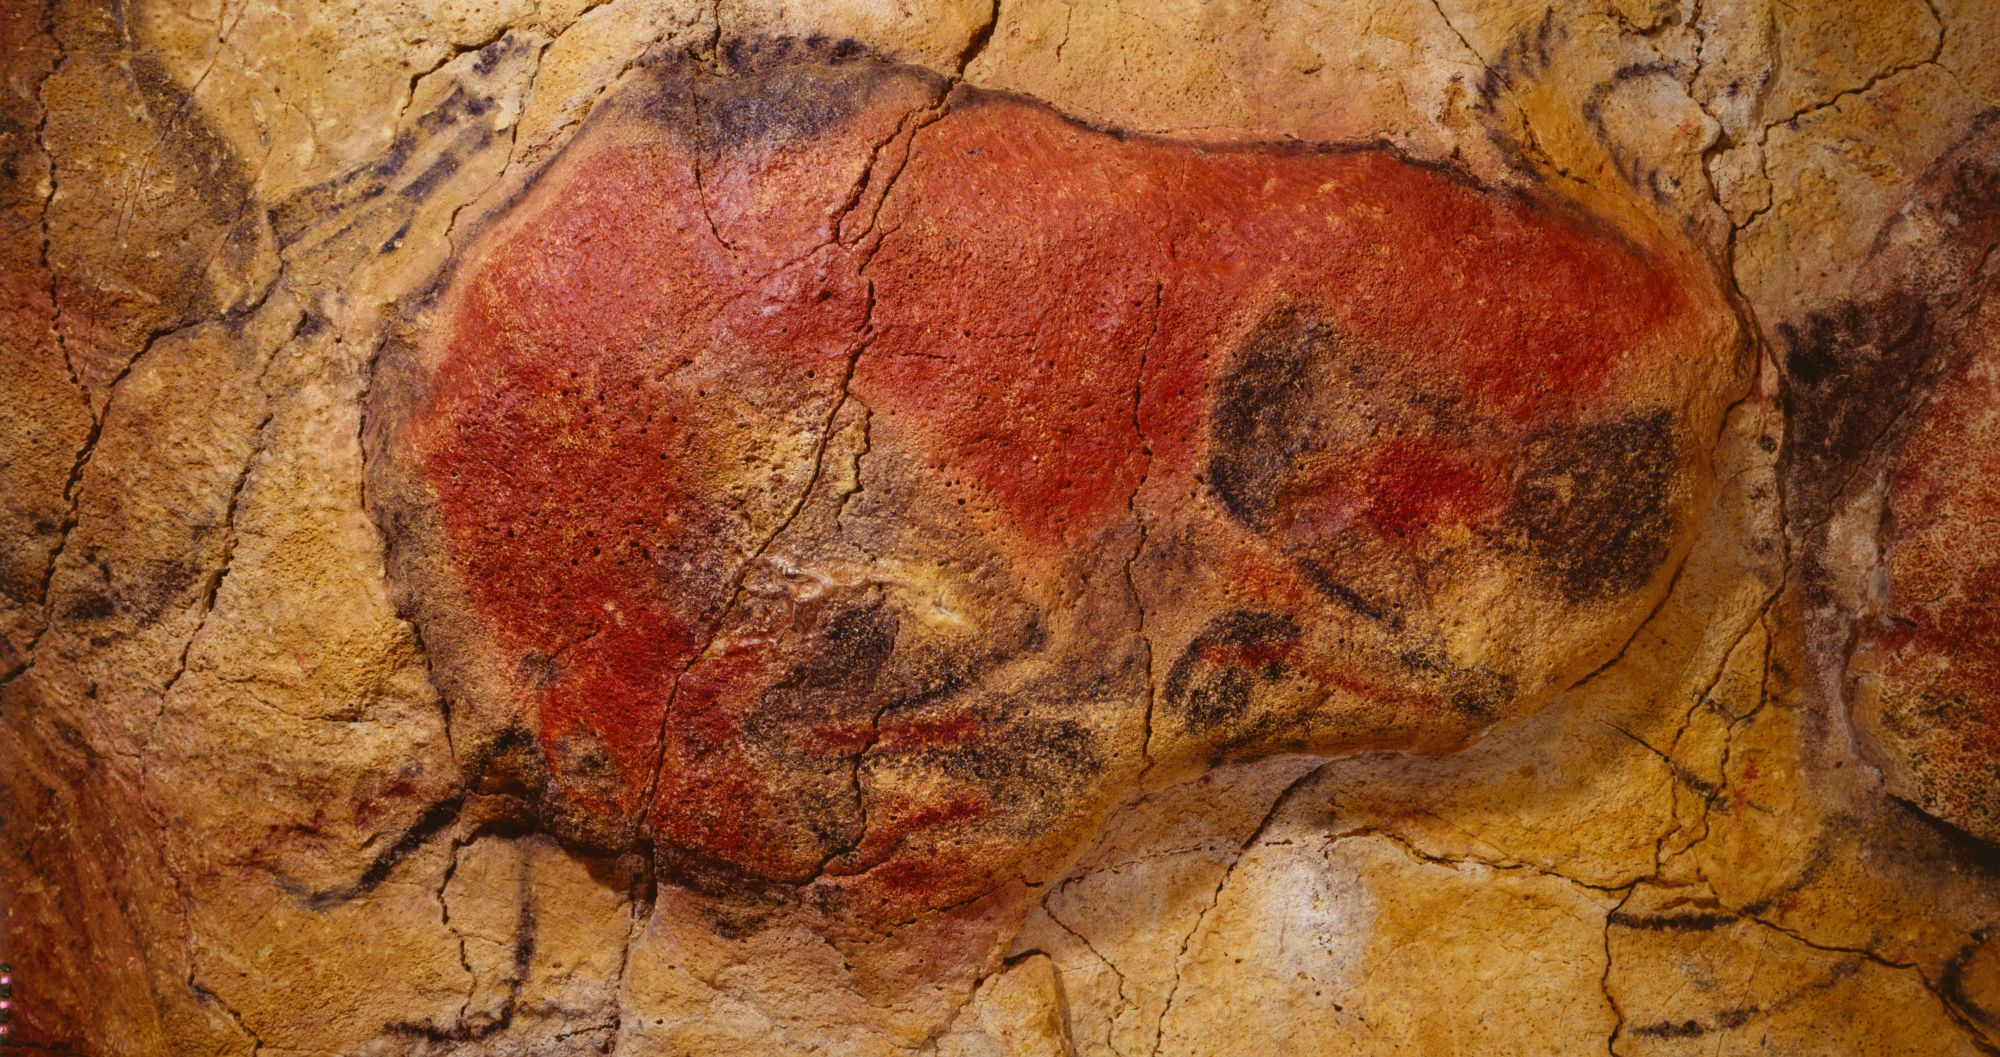 Depiction of a bison on rock